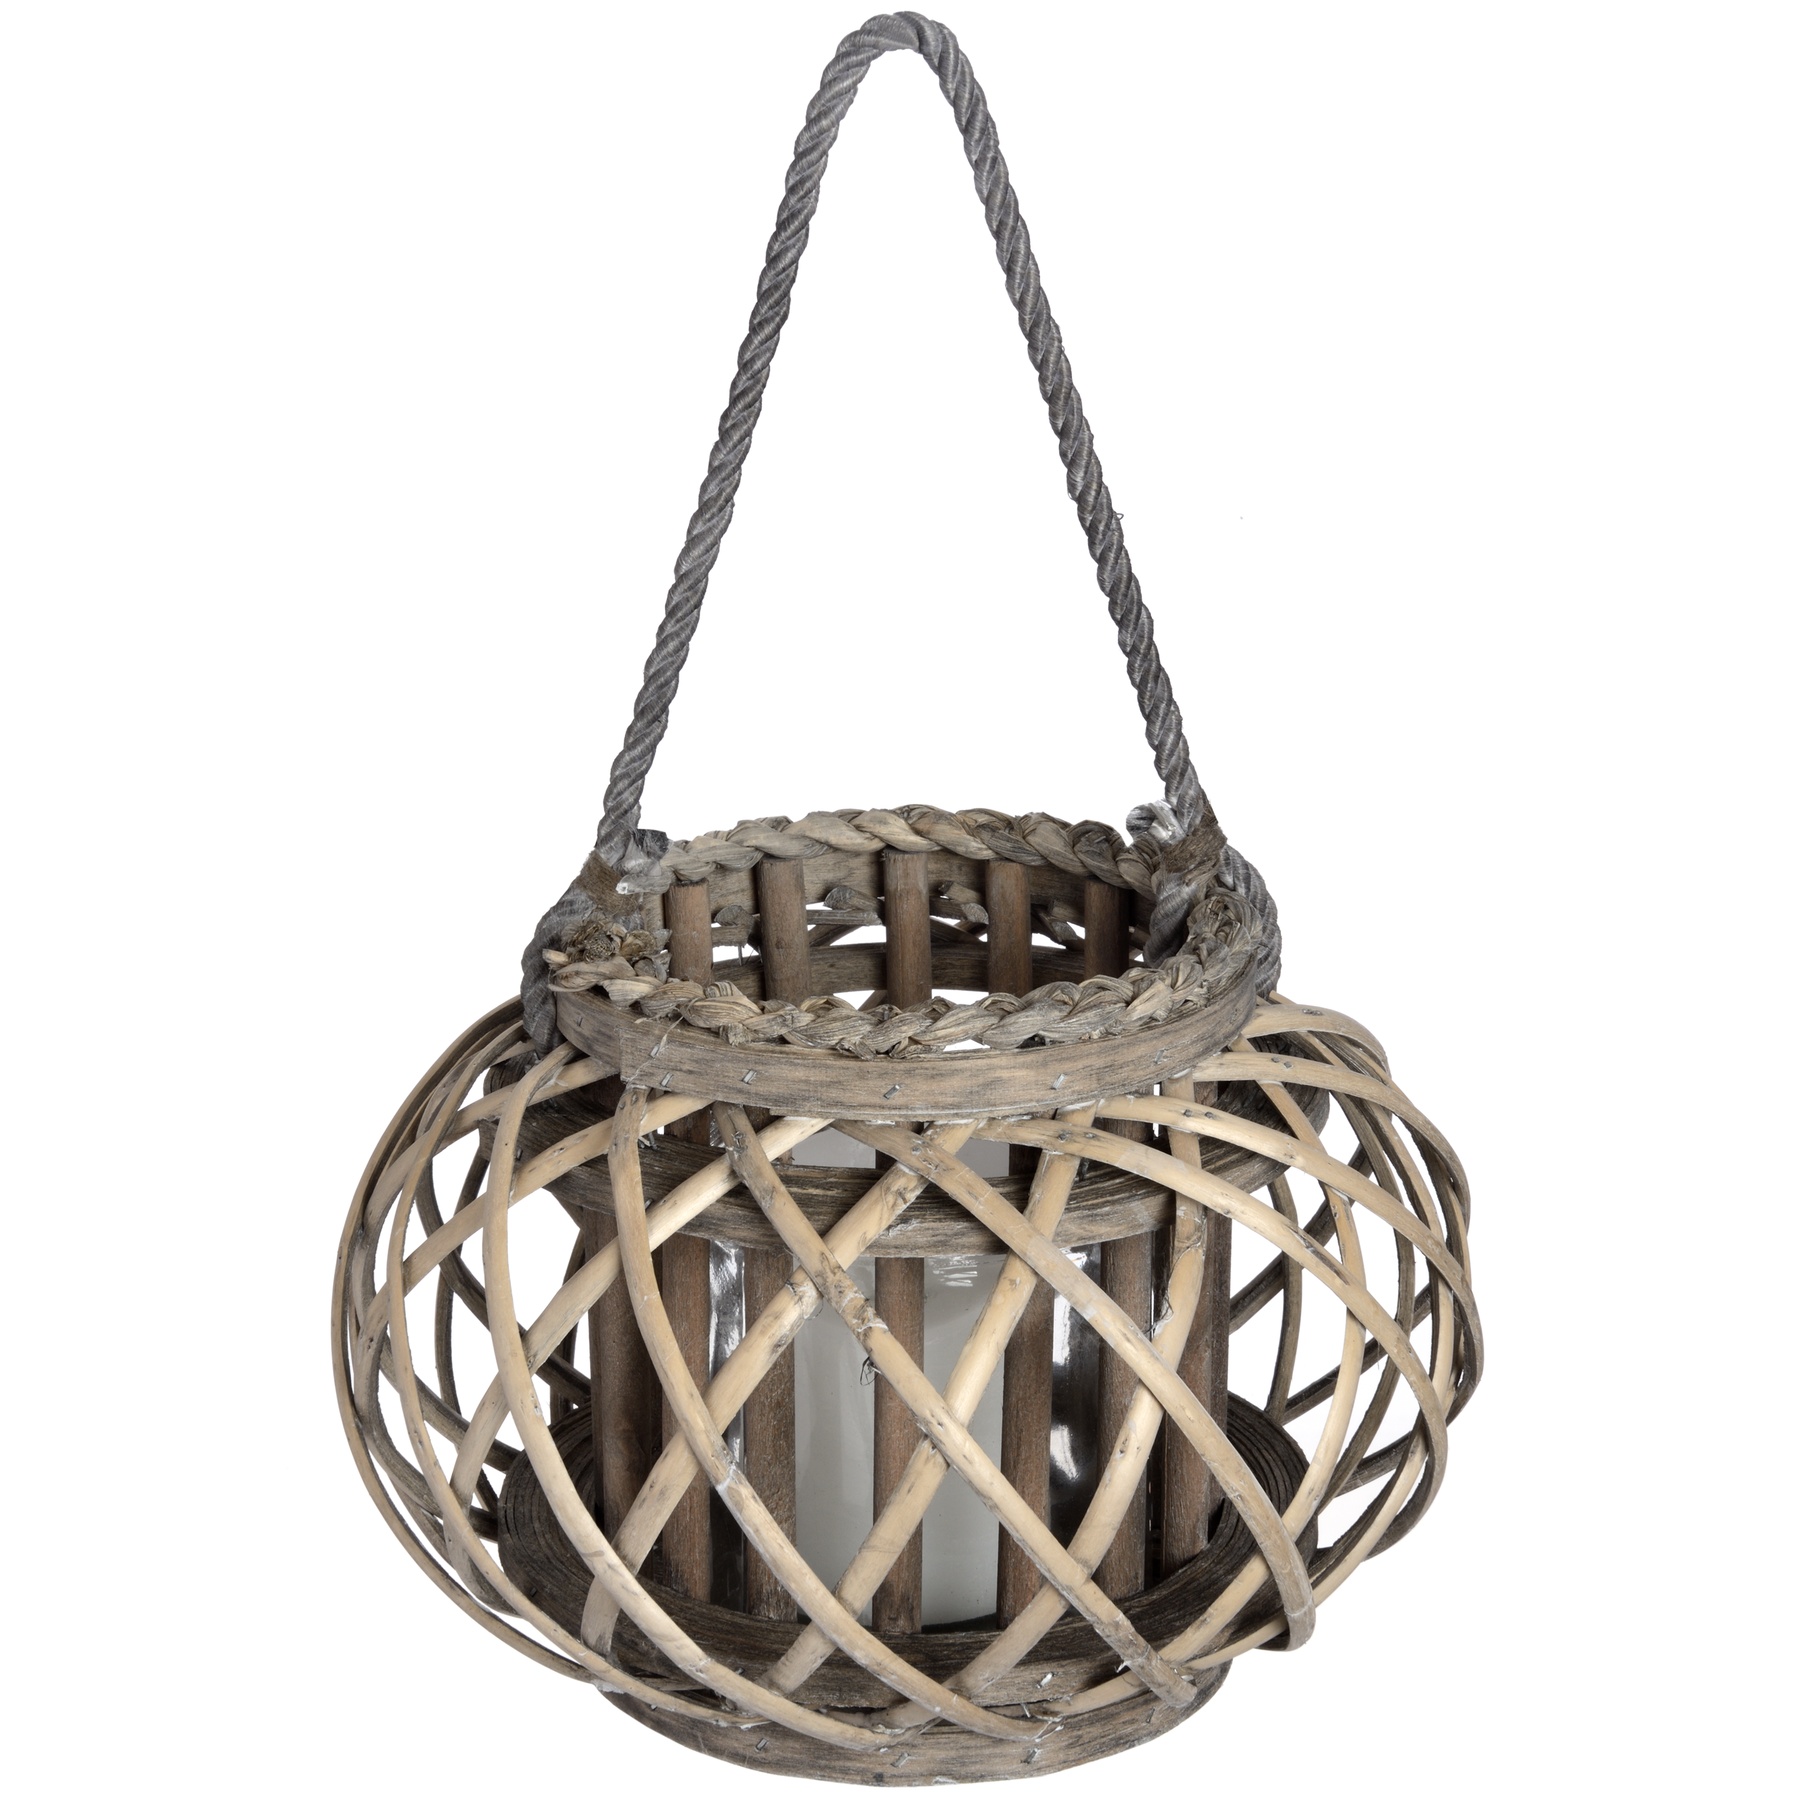 Large Wicker Basket Lantern - Image 1